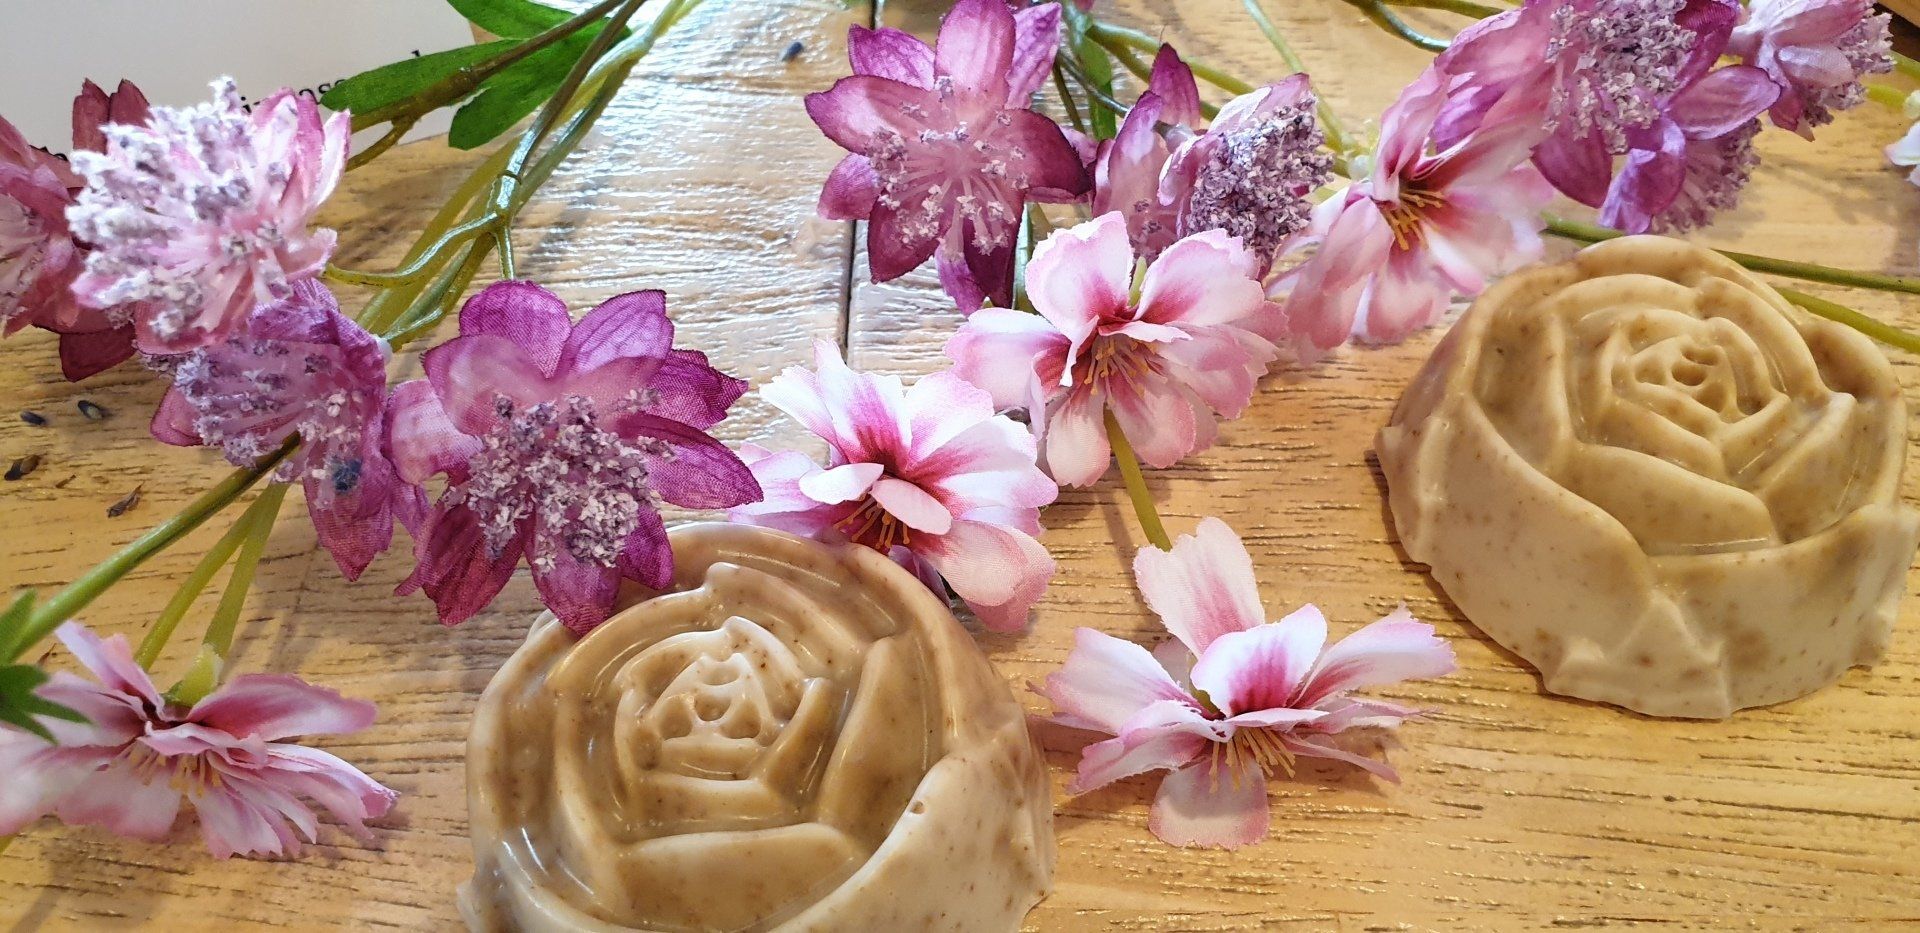 Drie zepen in de vorm van rozen staan ​​op een houten tafel omringd door bloemen.